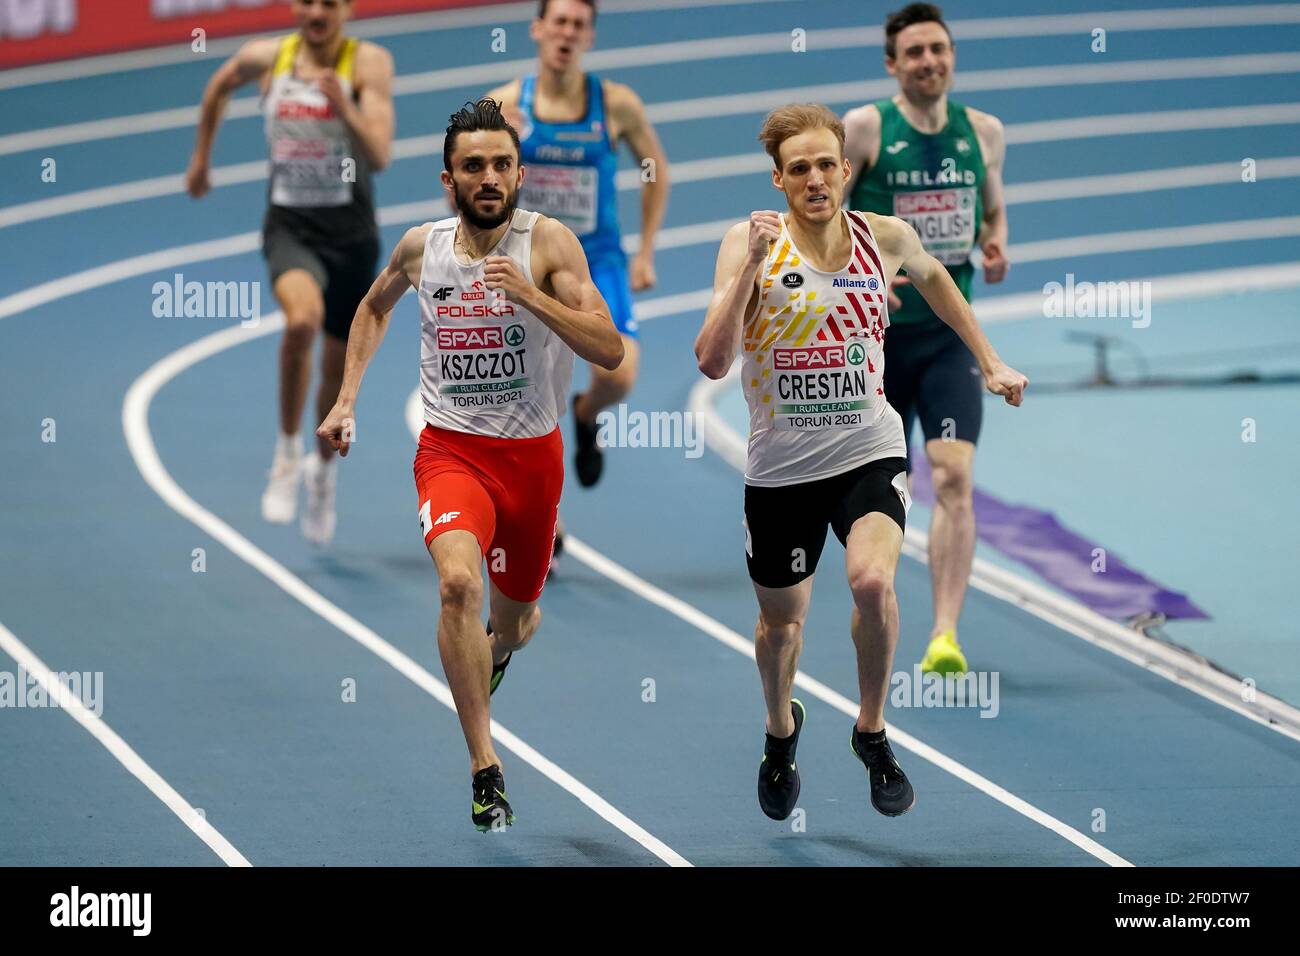 TORUN, POLONIA - 6 MARZO: Adam Kszczot di Polonia ed Eliott Crestan del Belgio gareggiano nella semifinale Mens 800m durante l'European Athletics Indo Foto Stock